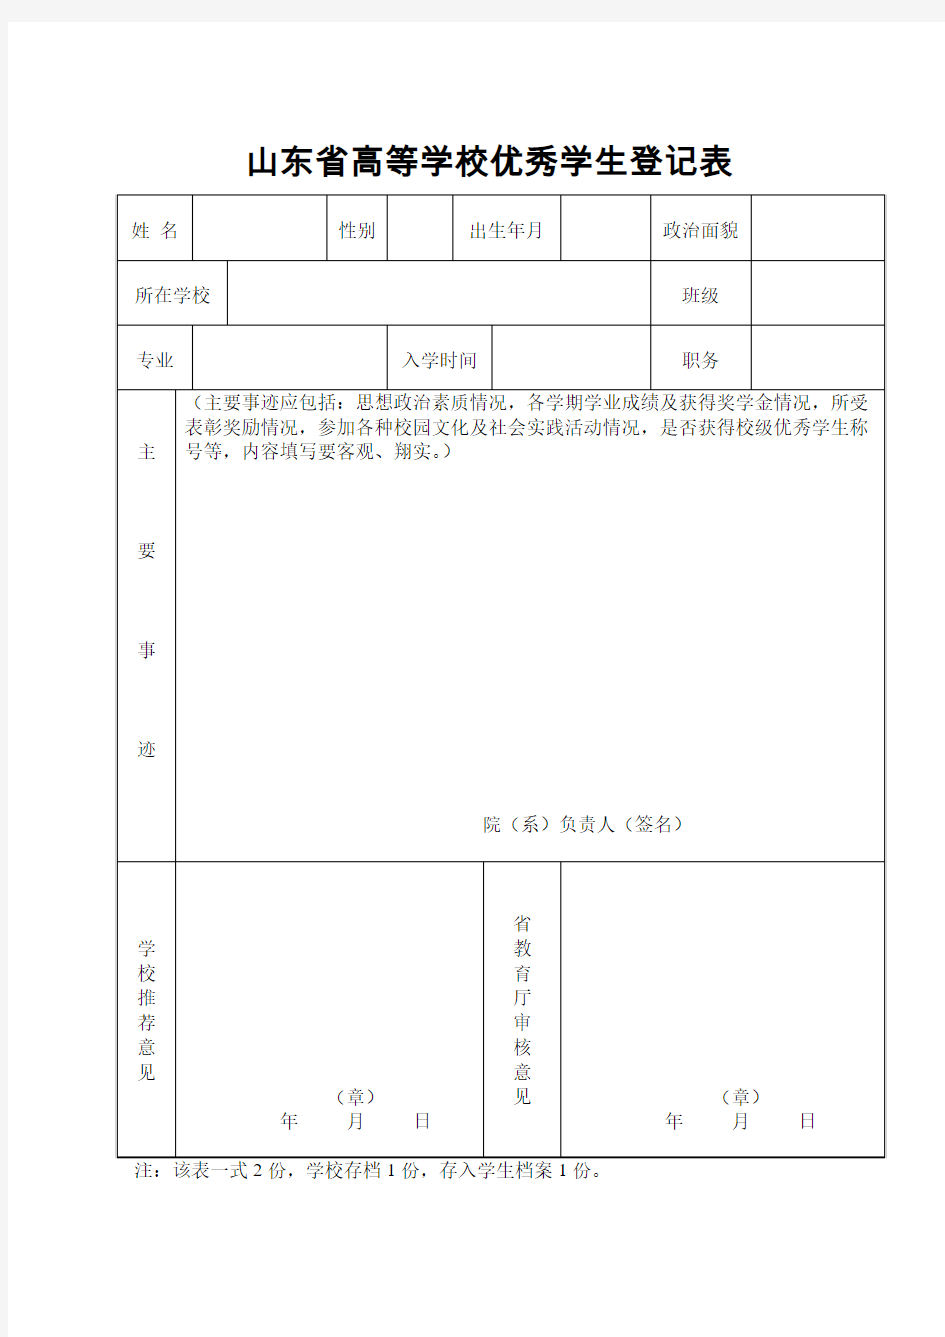 山东省高等学校优秀学生登记表(一式两份 双面打印纸质版)